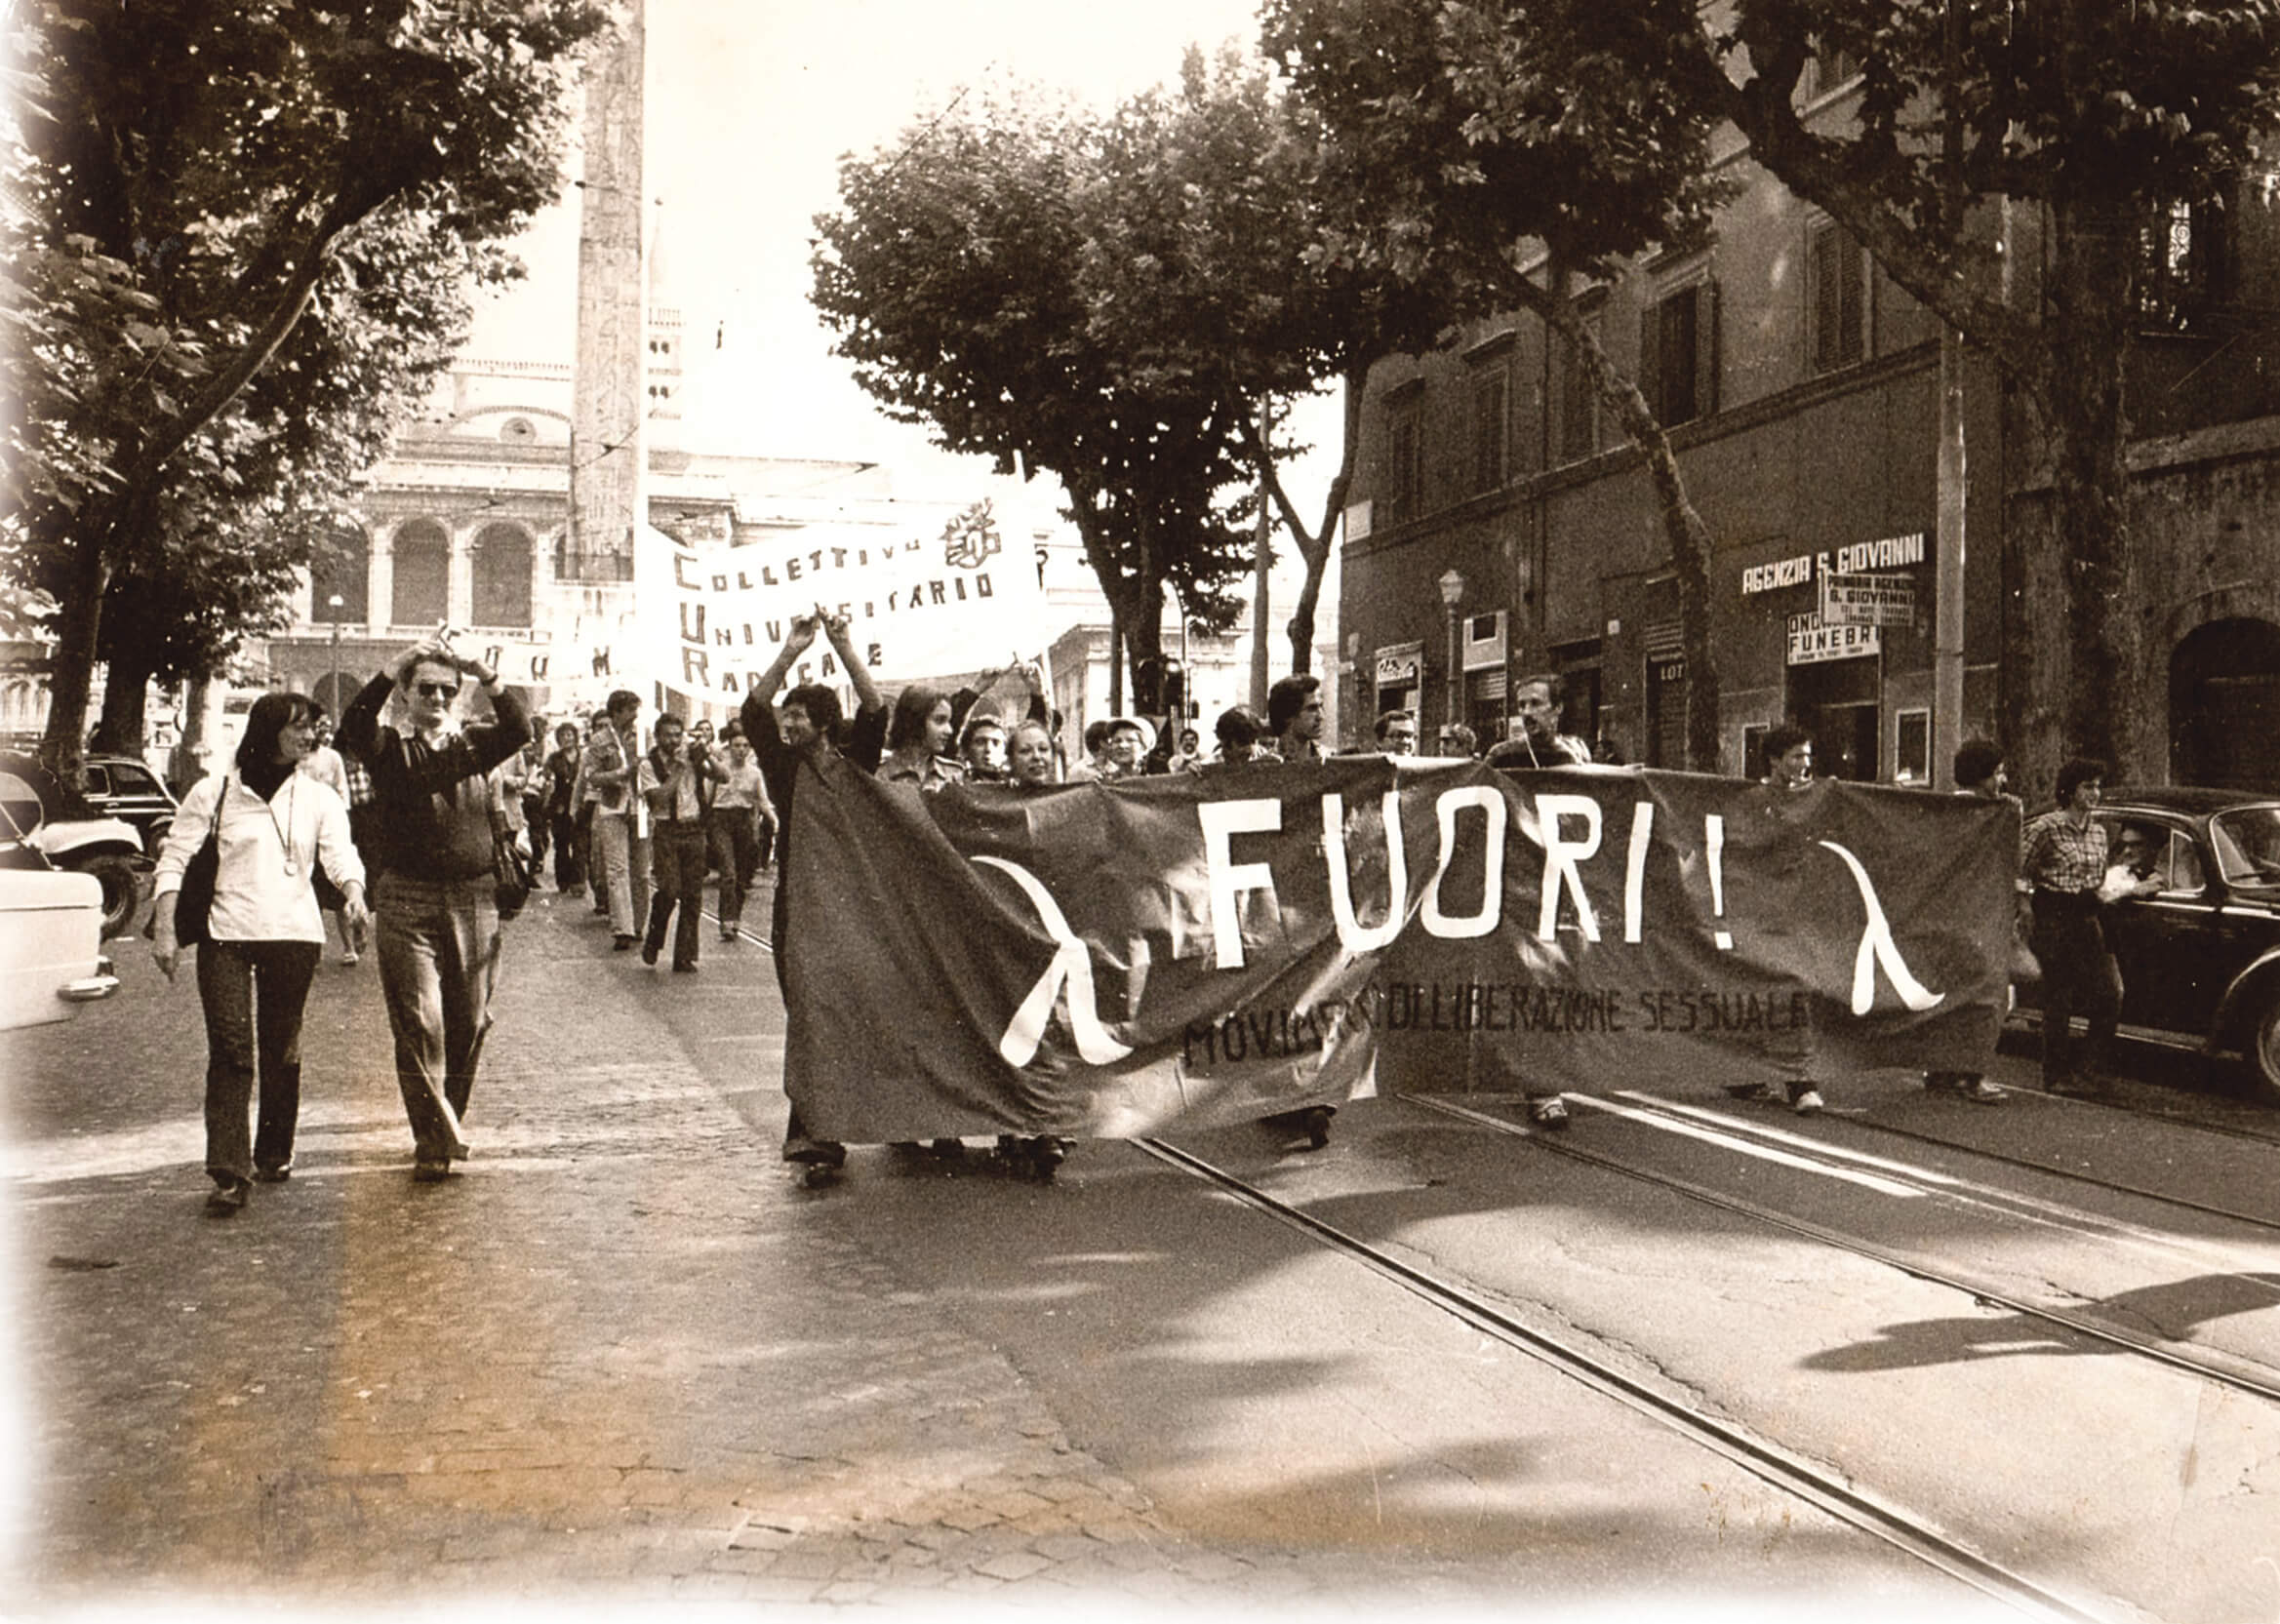  Una manifestazione del FUORI! a Roma, anch’essa datata 1975, si riconosce, sulla sinistra, il leader del FUORI! Angelo Pezzana.